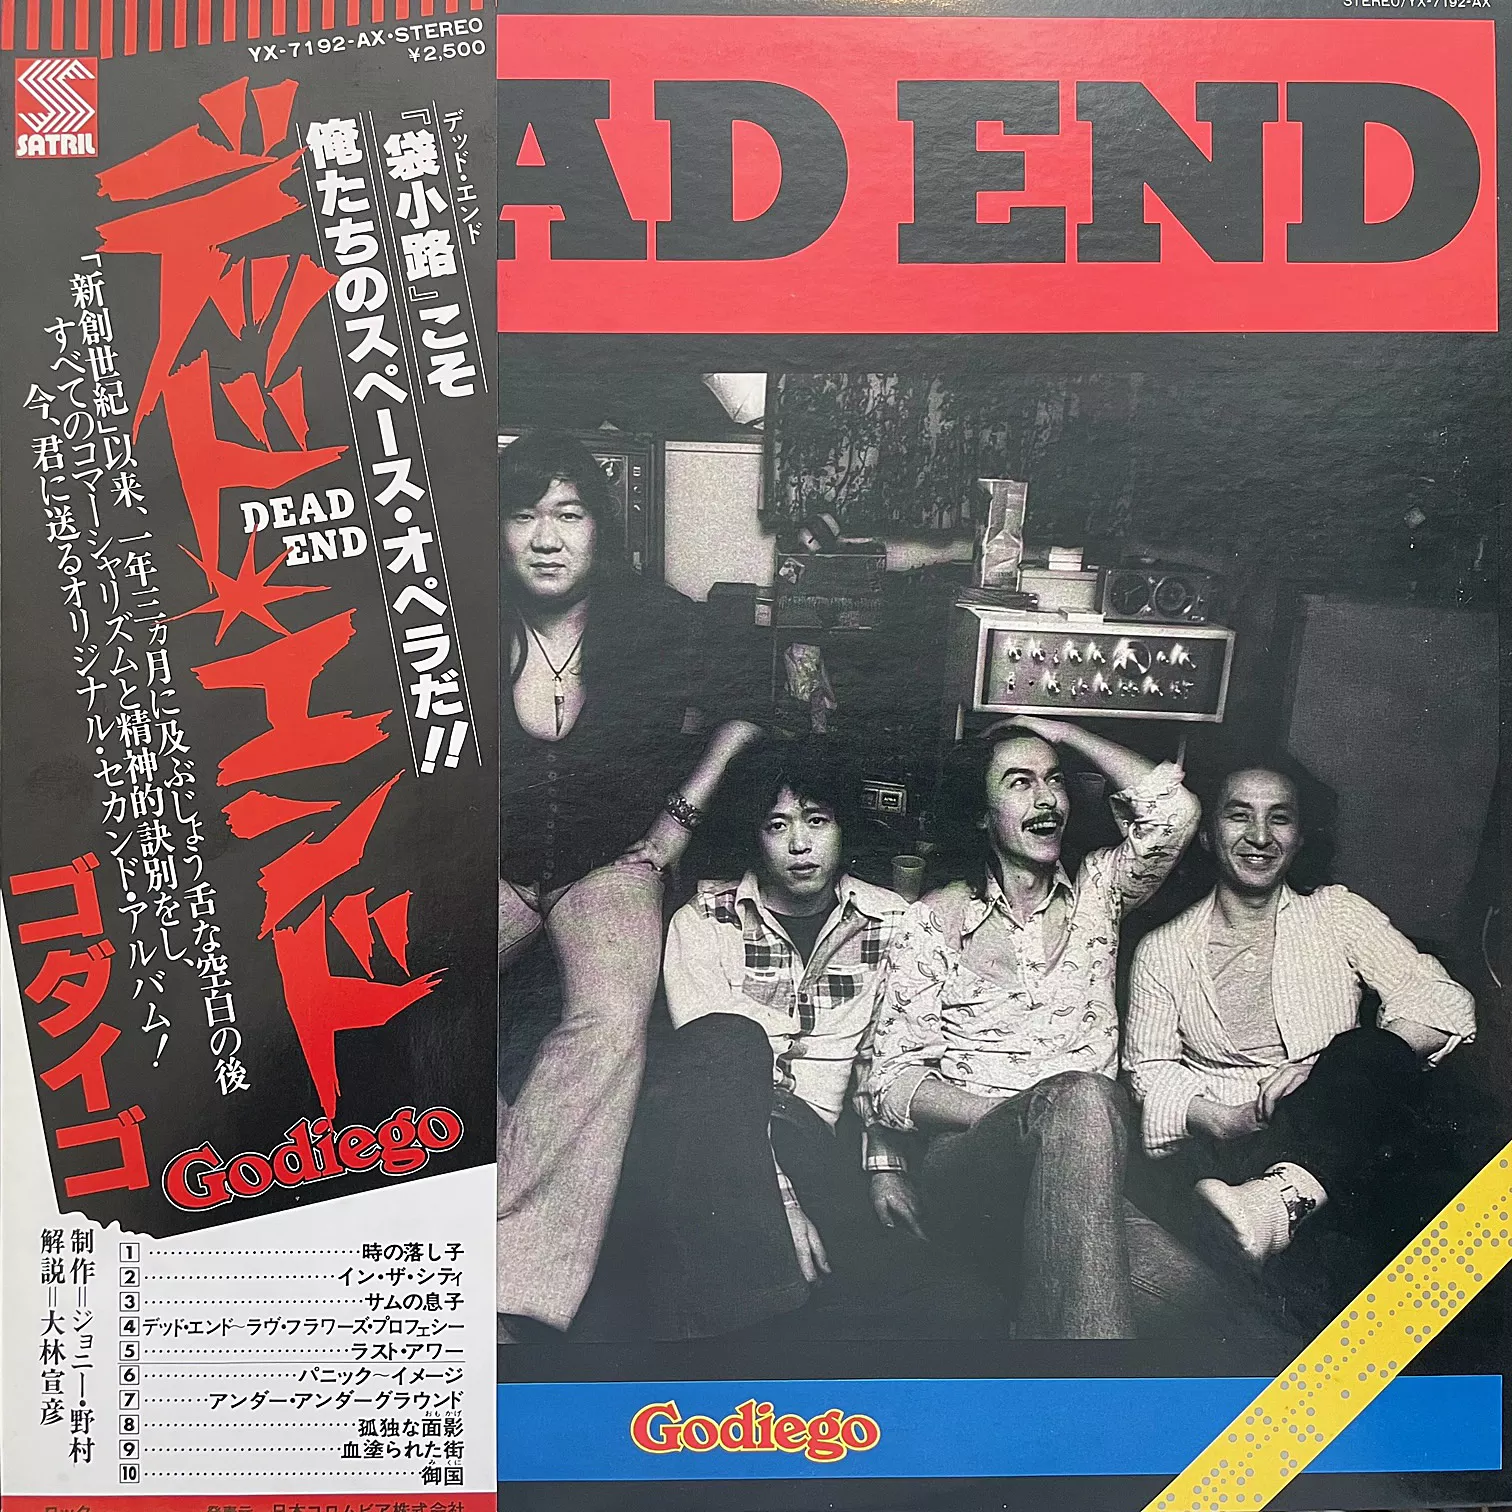 ゴダイゴ (GODIEGO) / DEAD END